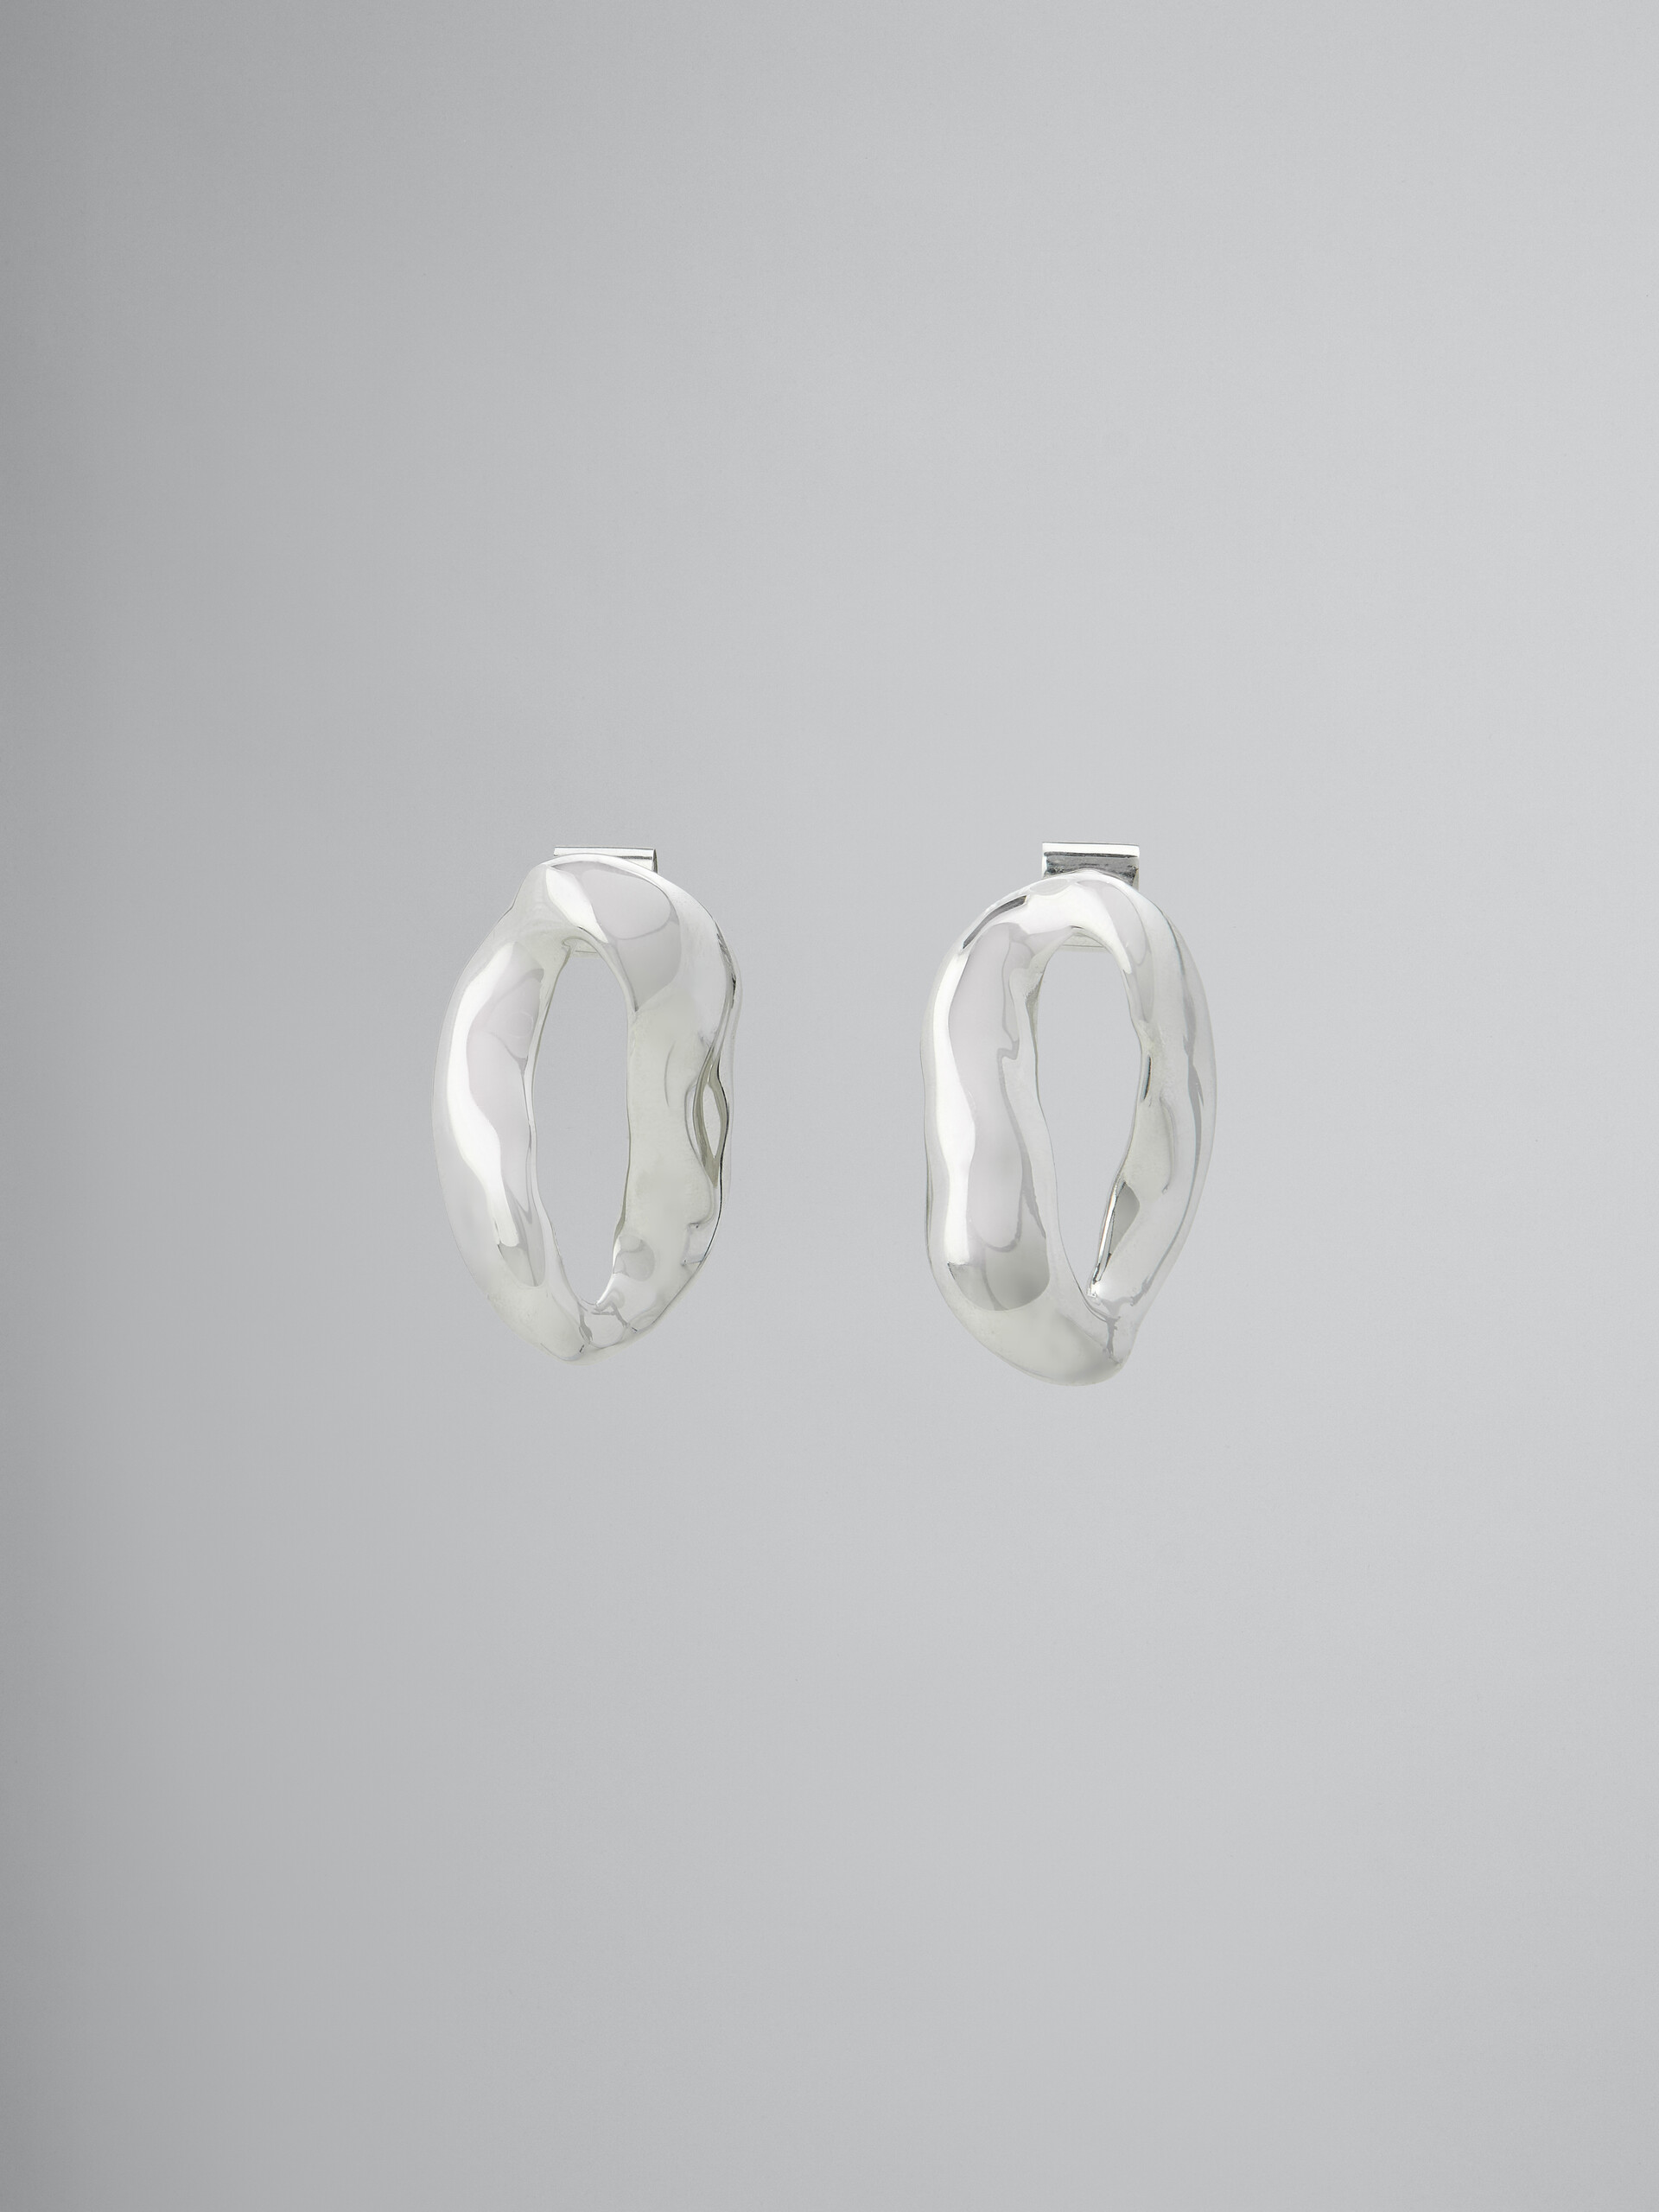 Oversized irregular ring earrings - Earrings - Image 1